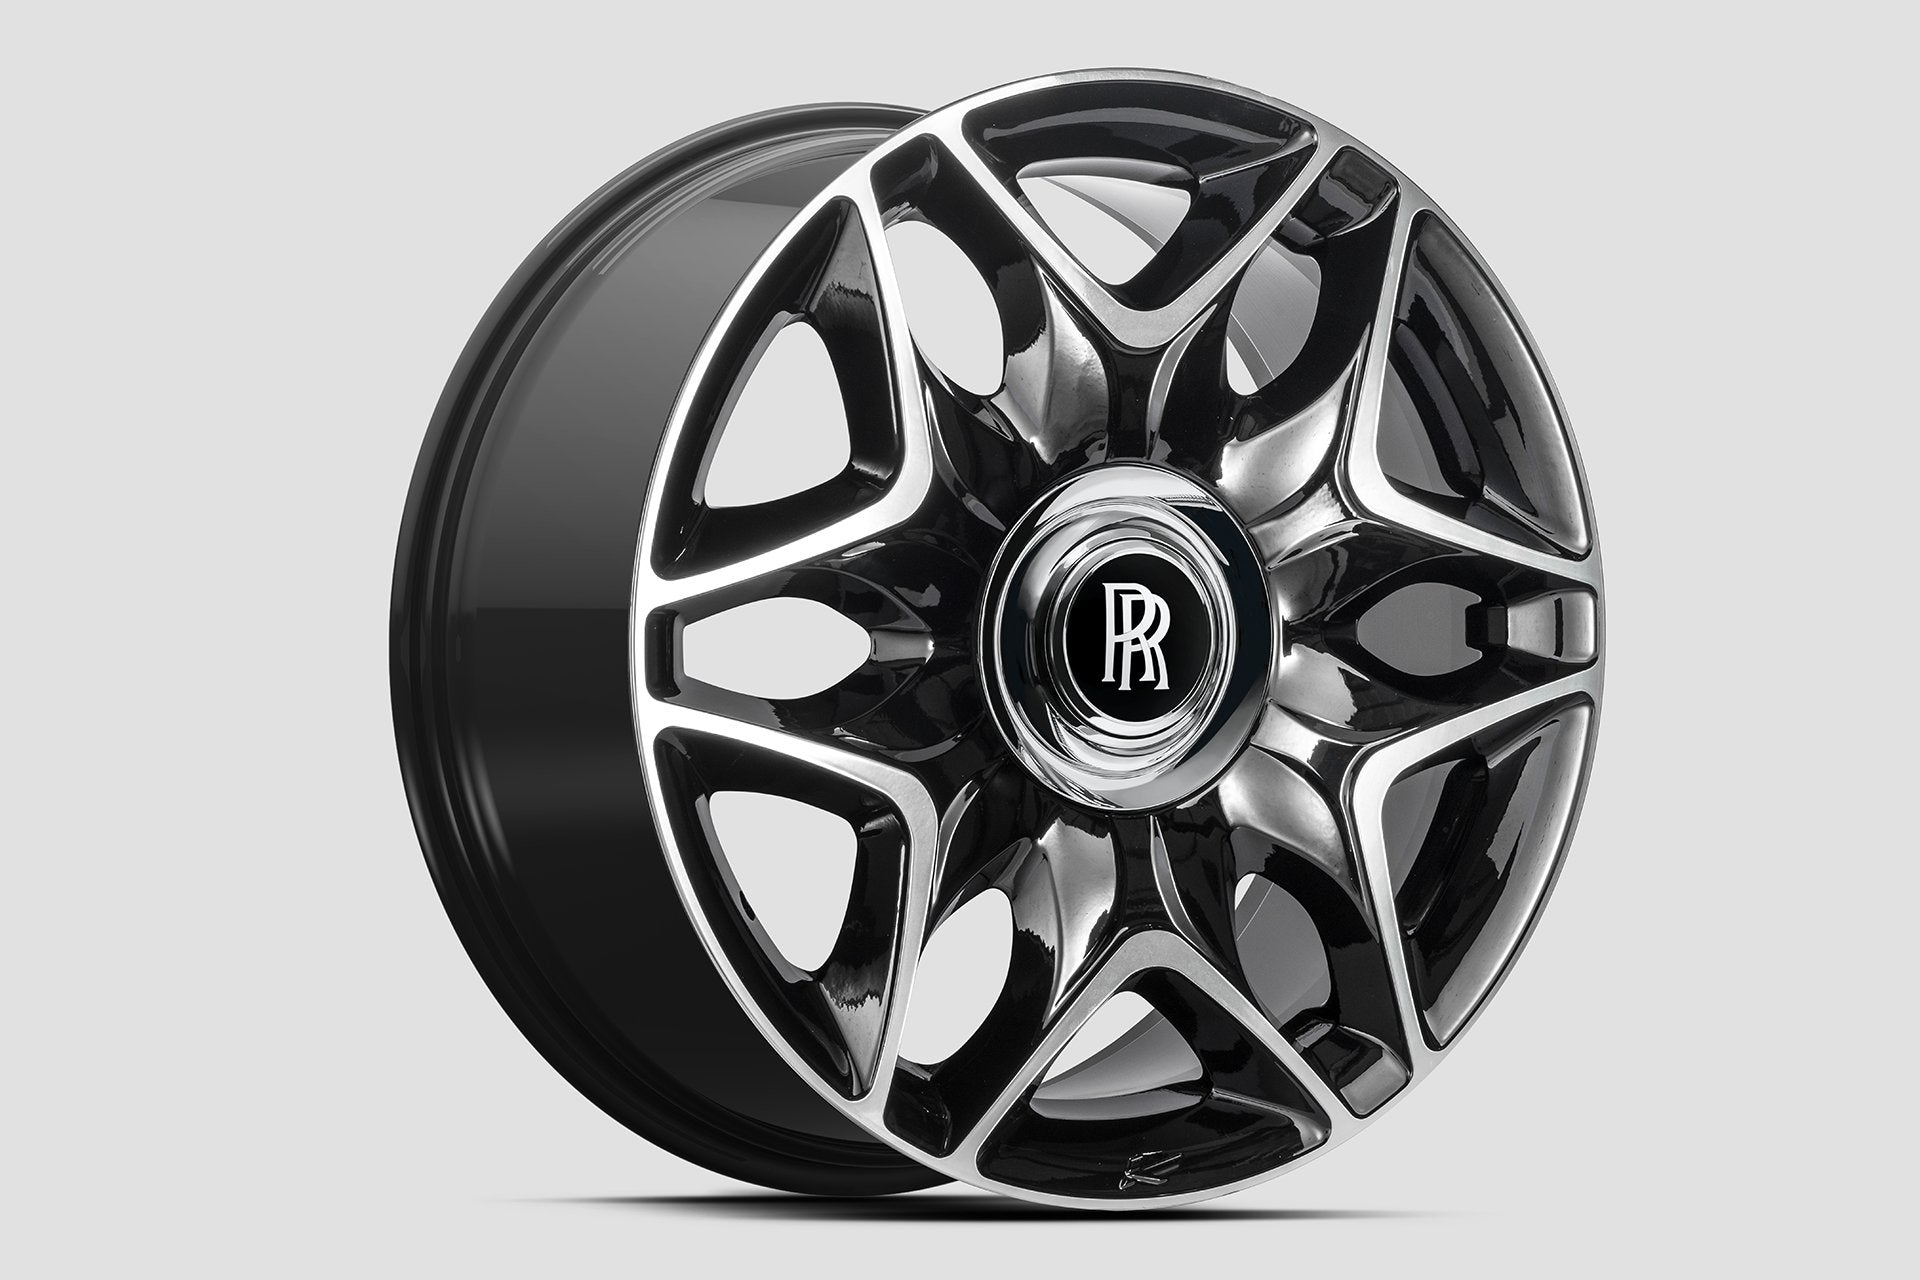 Rolls Royce Alloy Wheels  Performance Tyres  Buy Alloys at Wheelbase